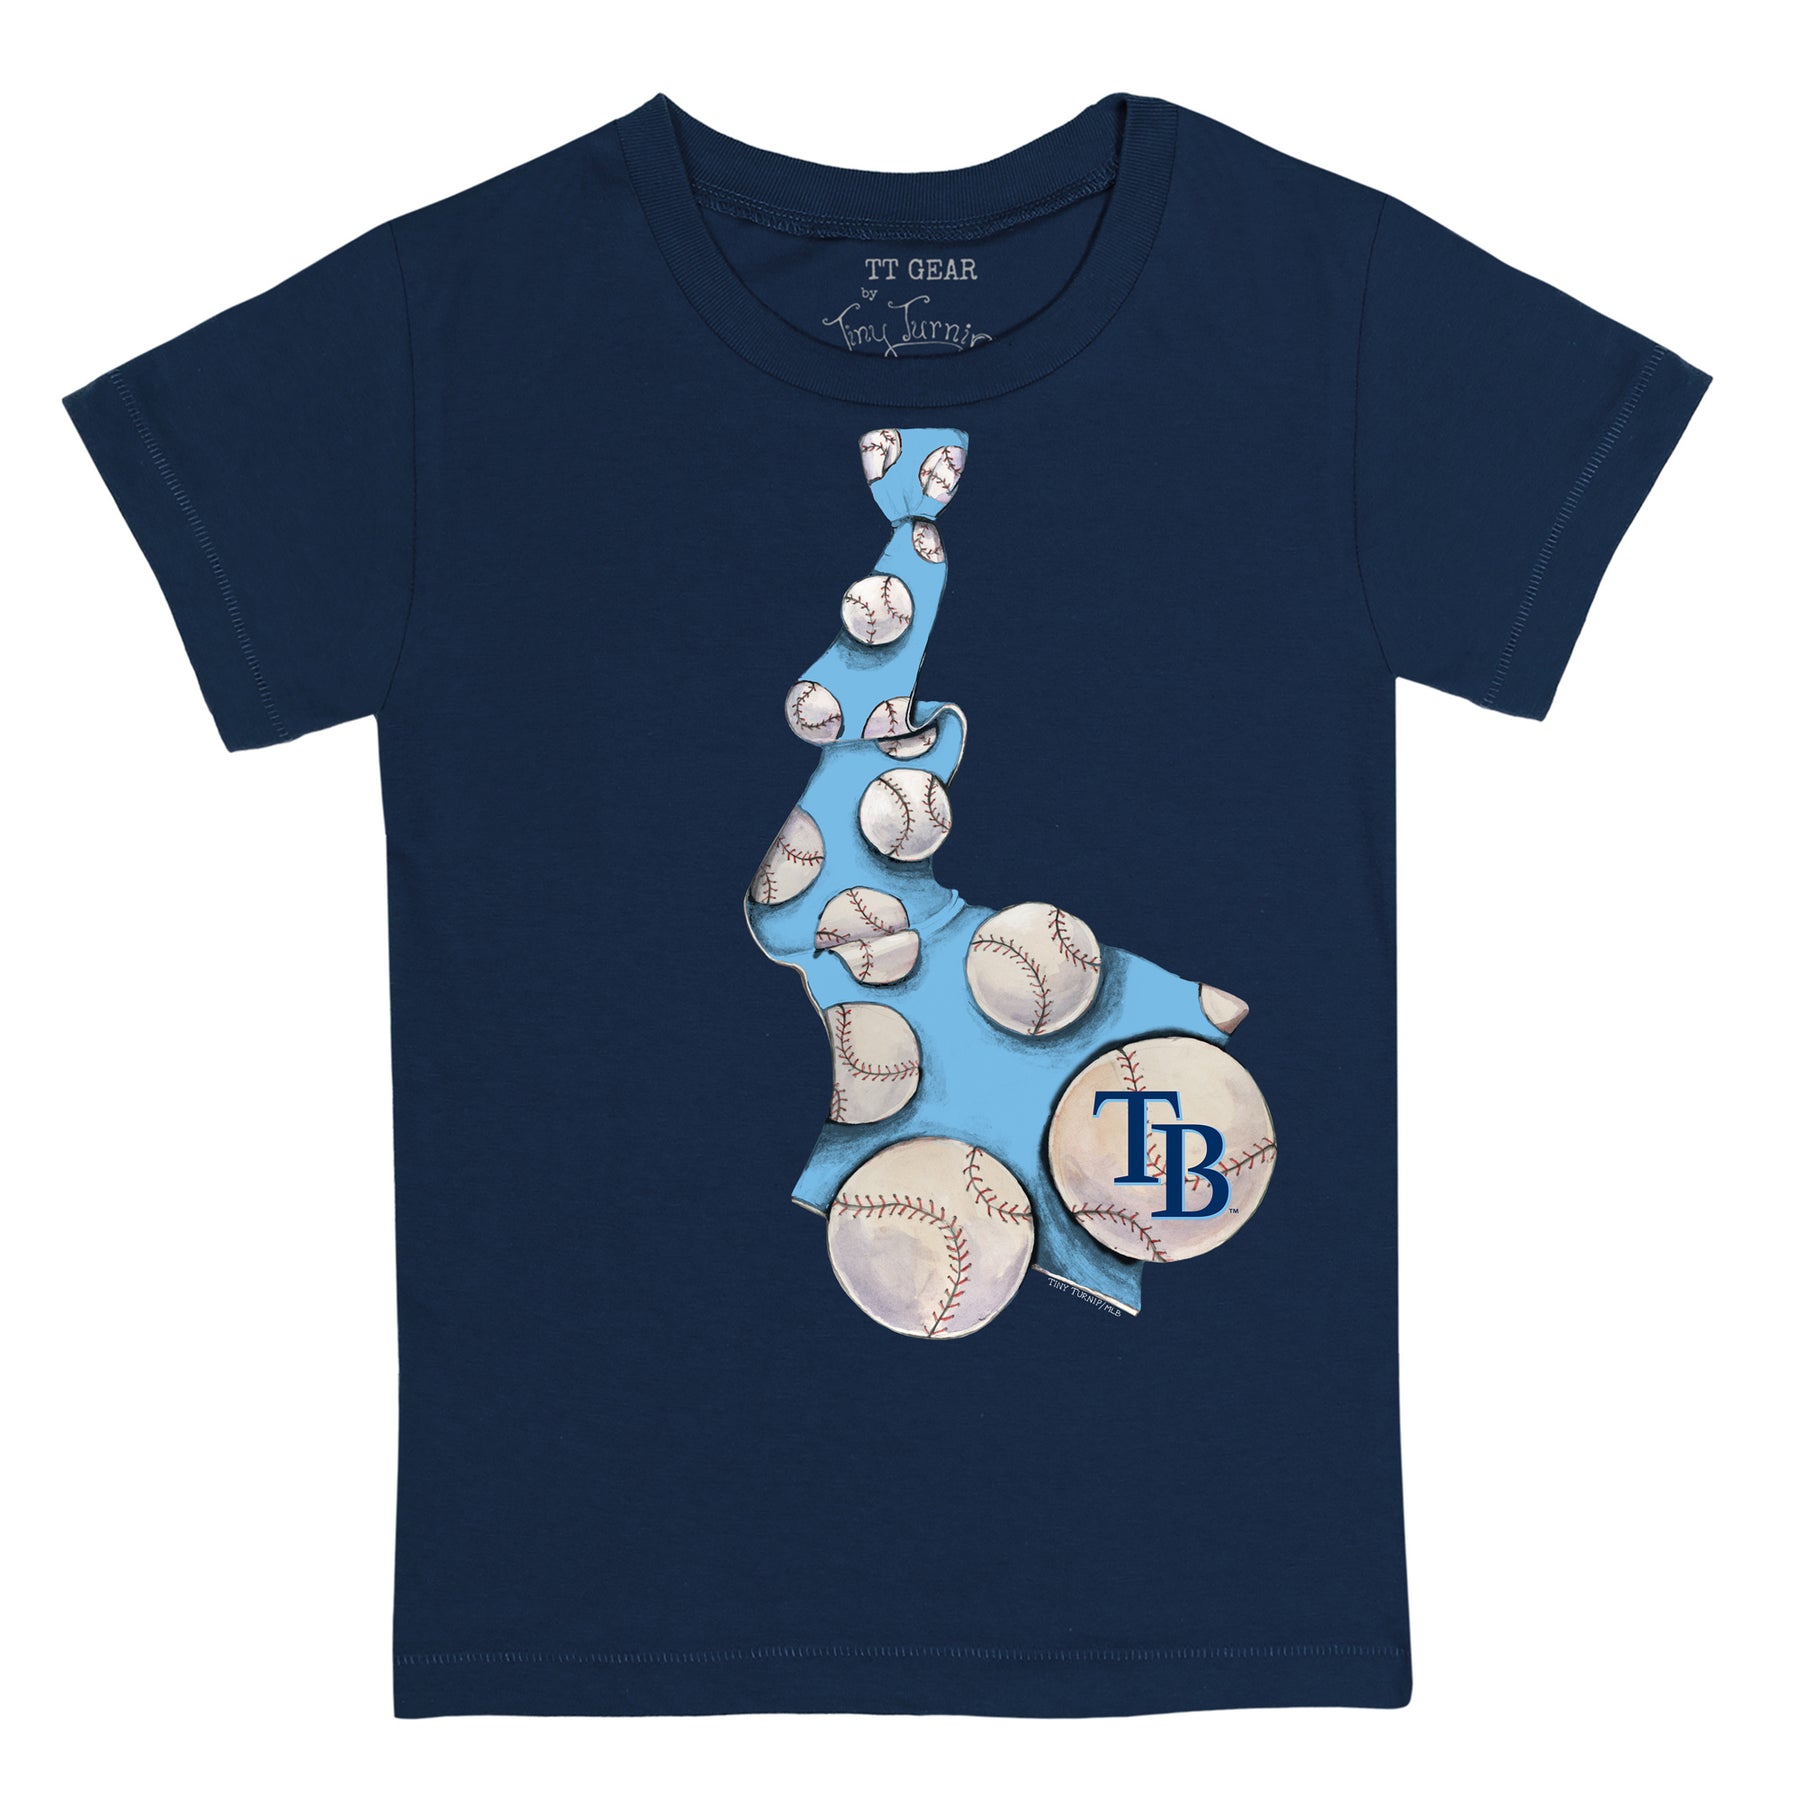 Tiny Turnip Tampa Bay Rays Youth Navy Baseball Tie T-Shirt